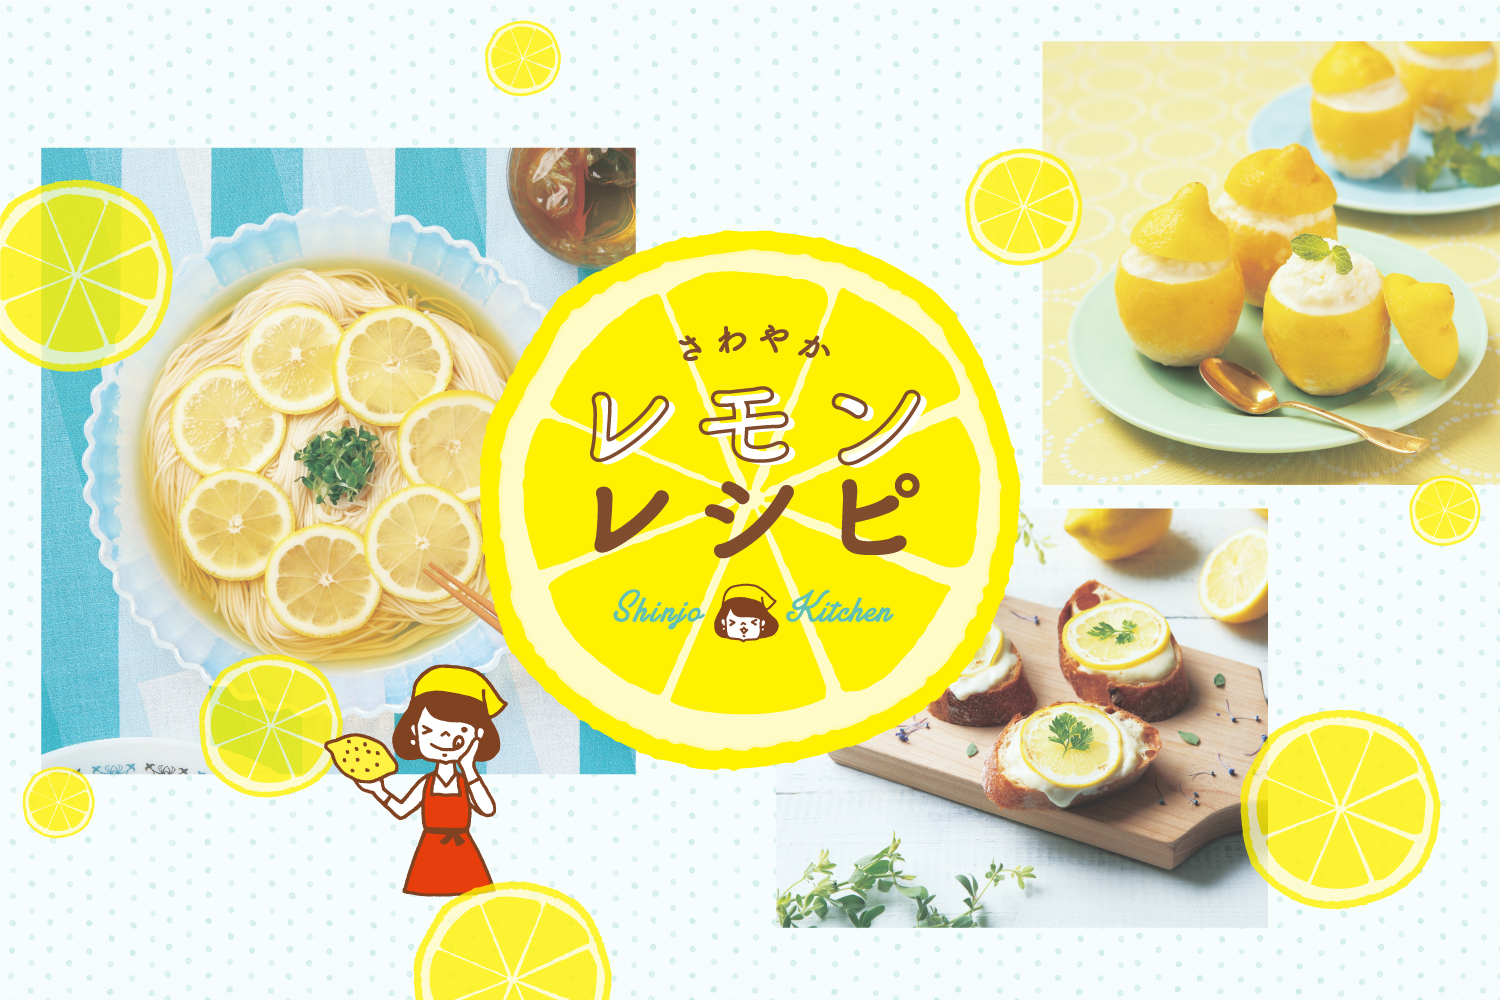 【Shinjo Kitchen～管理栄養士養成課程のお料理レッスン～】 さわやかレモンレシピ